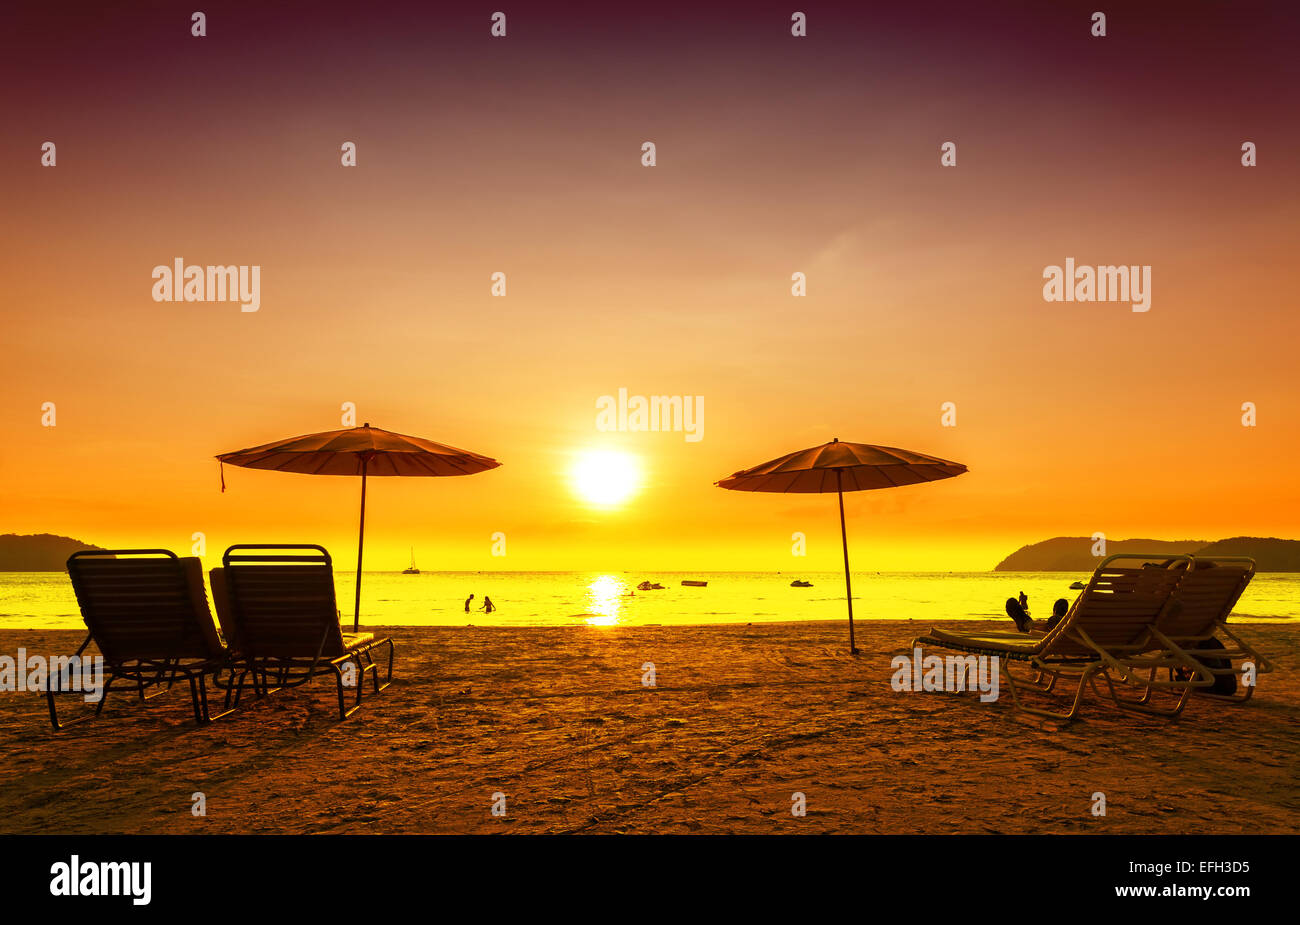 Retrò immagine filtrata di sedie a sdraio e ombrelloni sulla spiaggia al tramonto. Concetto per il riposo, il relax, vacanze. Foto Stock